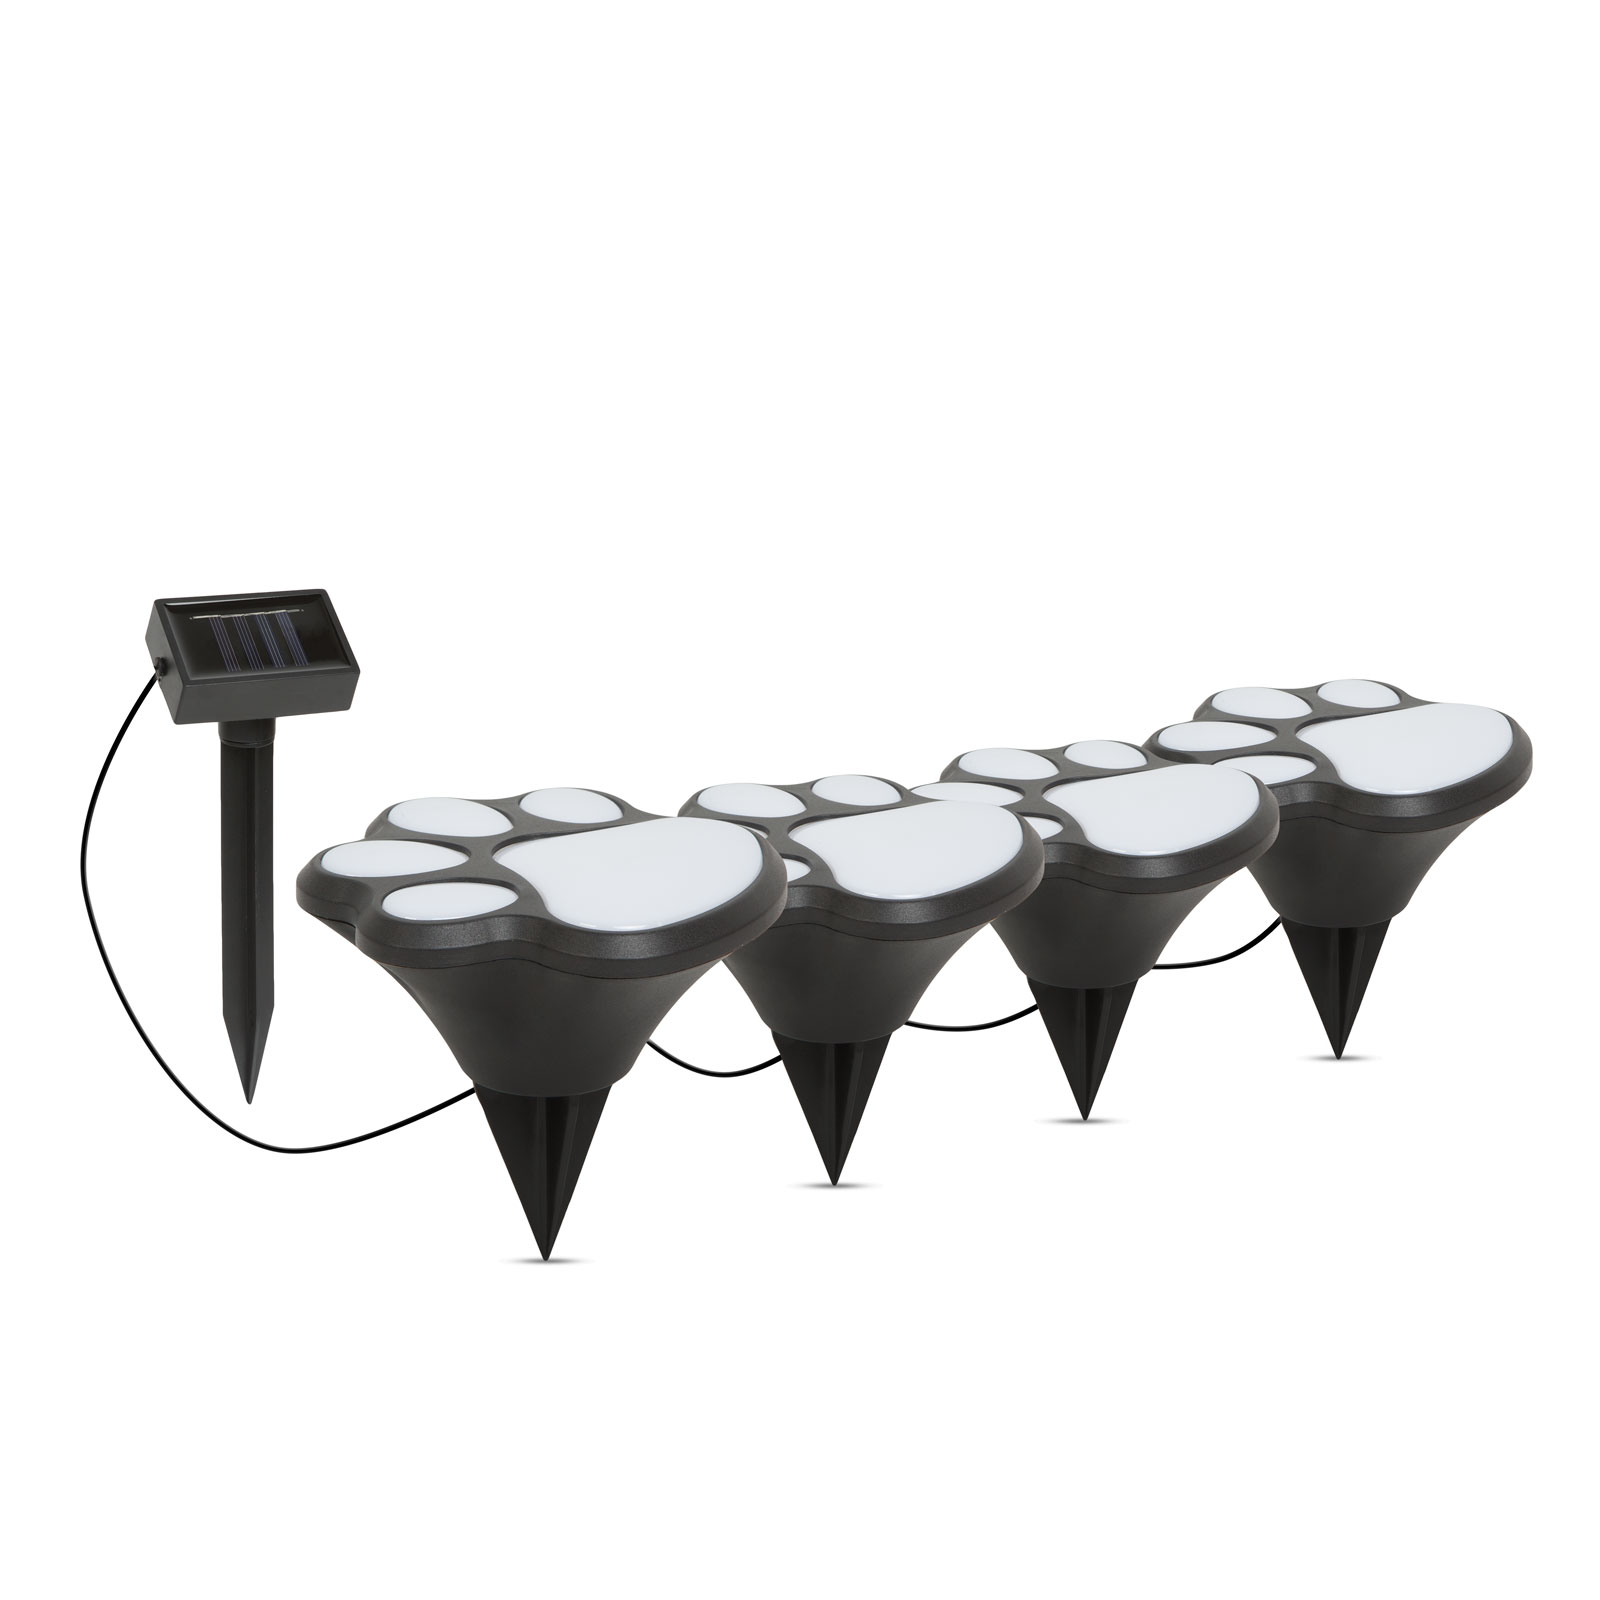 LED-es szolár lámpa - kutya lábnyom, leszúrható - műanyag - fekete - 360 cm thumb